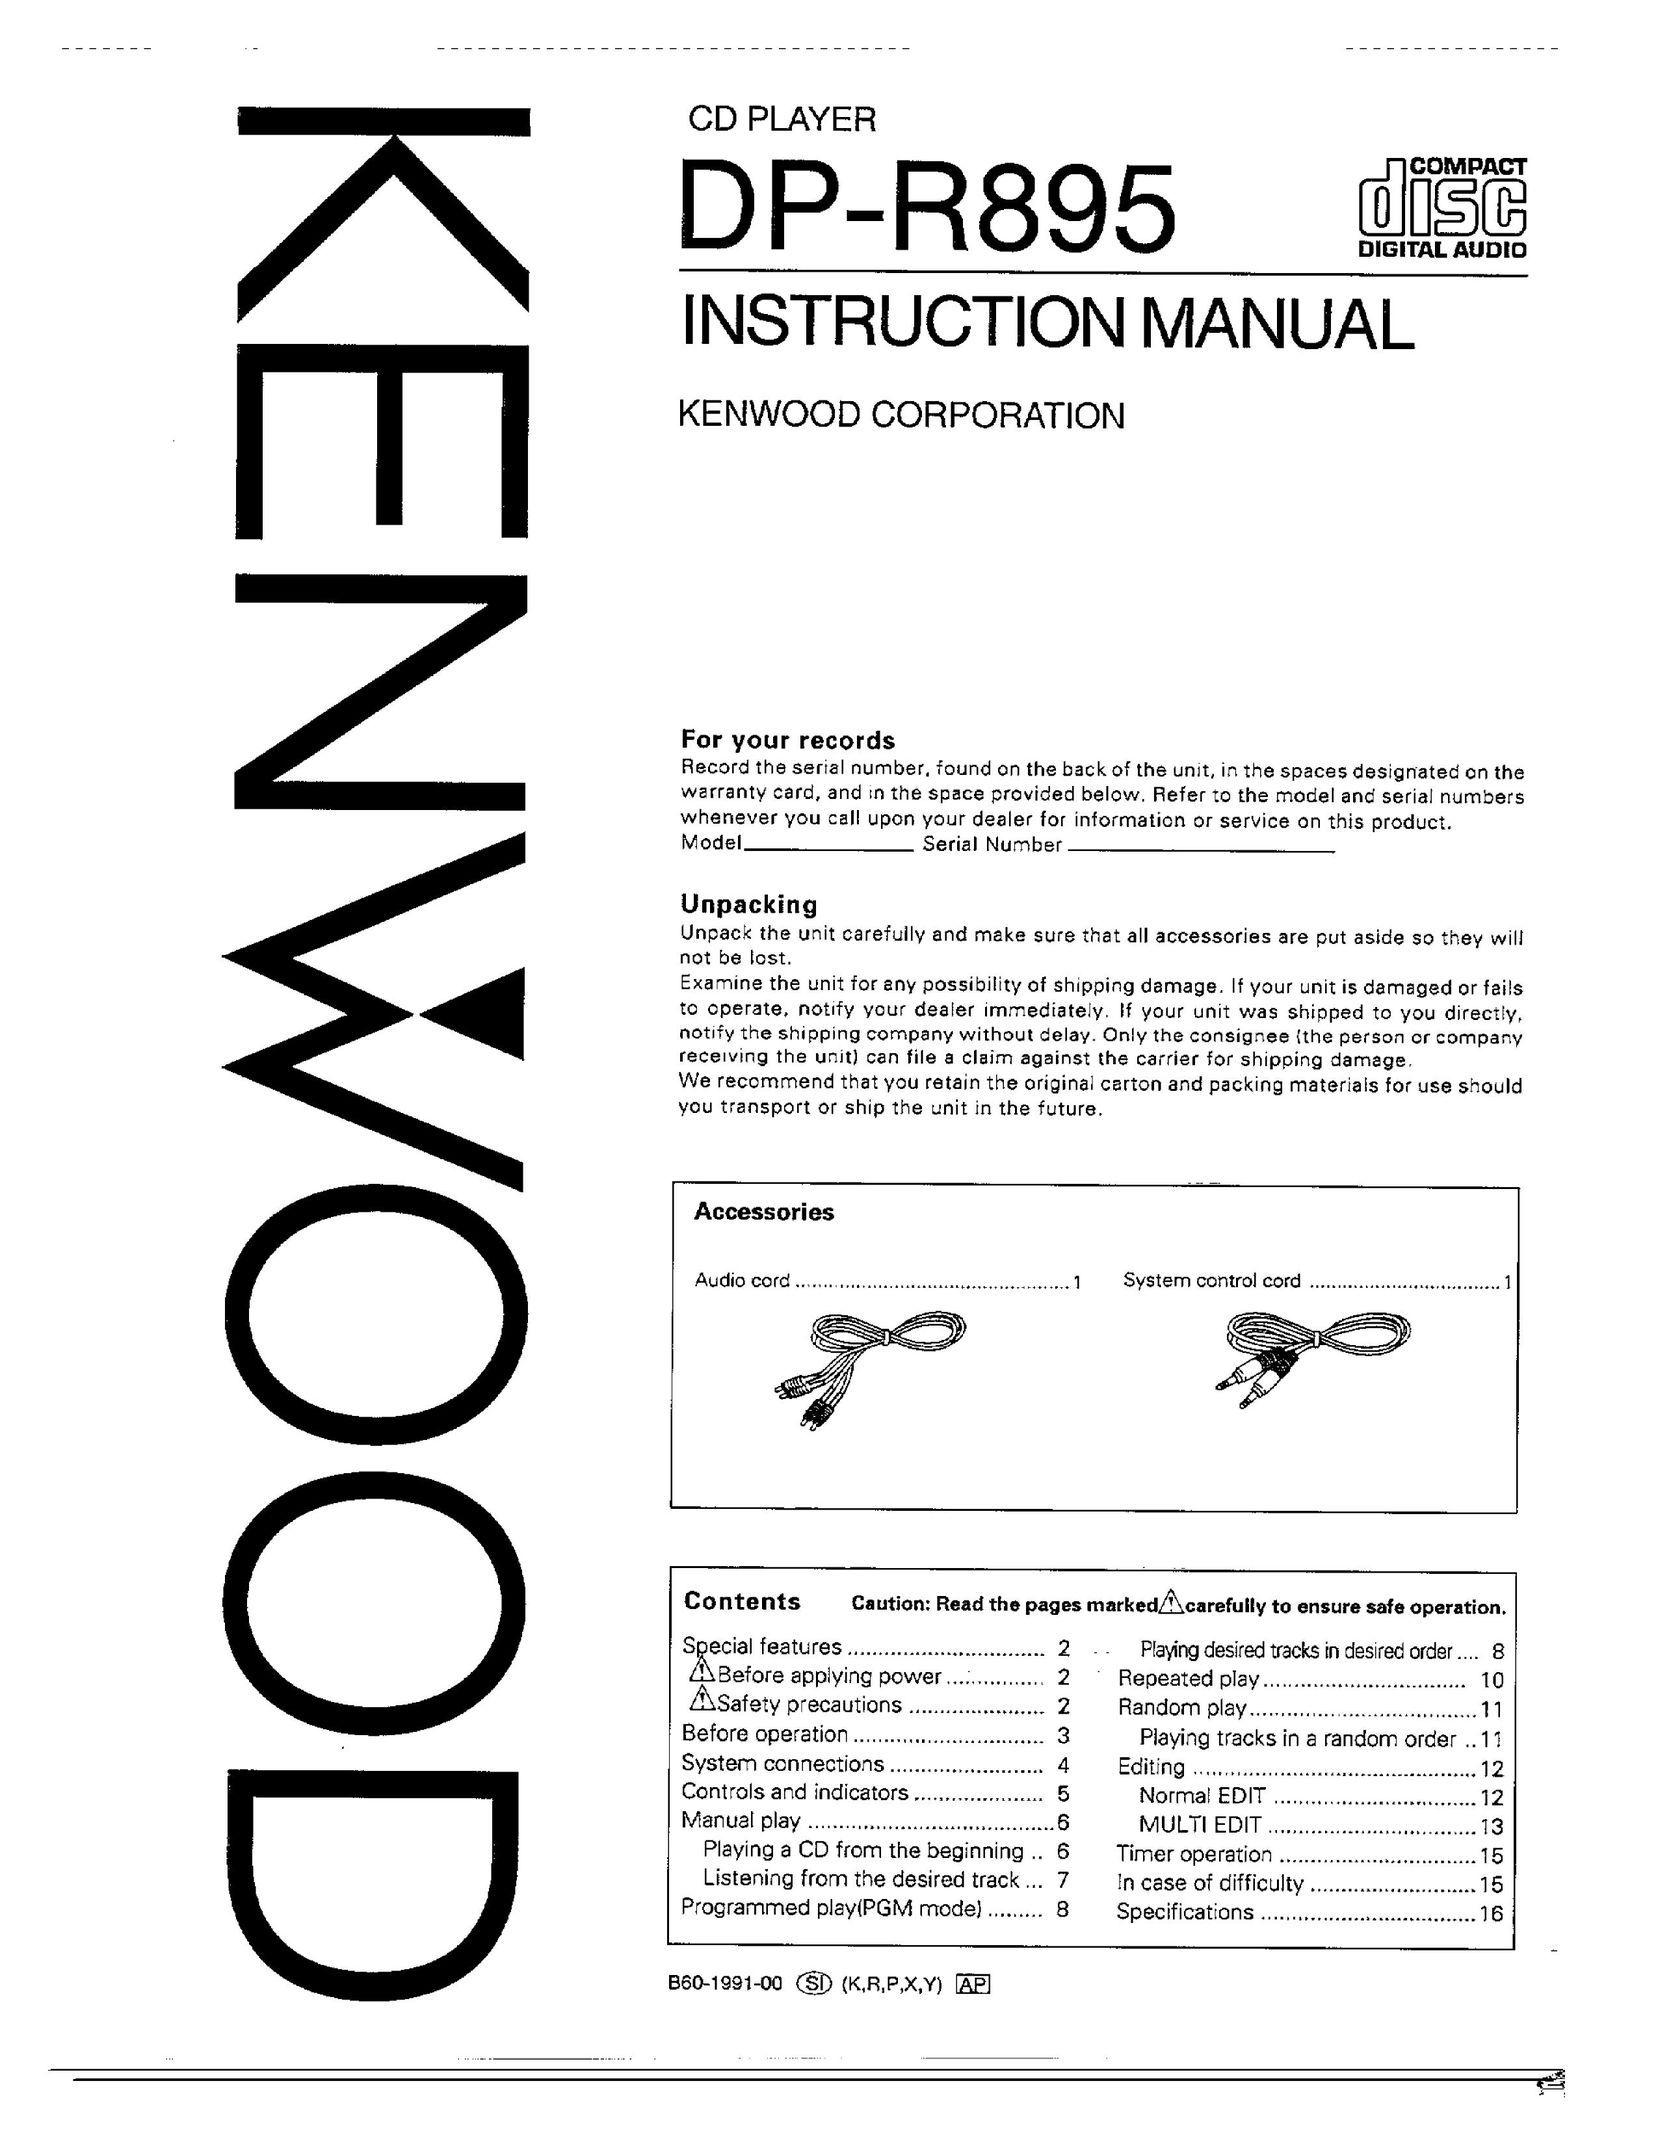 Kenwood DP-R895 CD Player User Manual